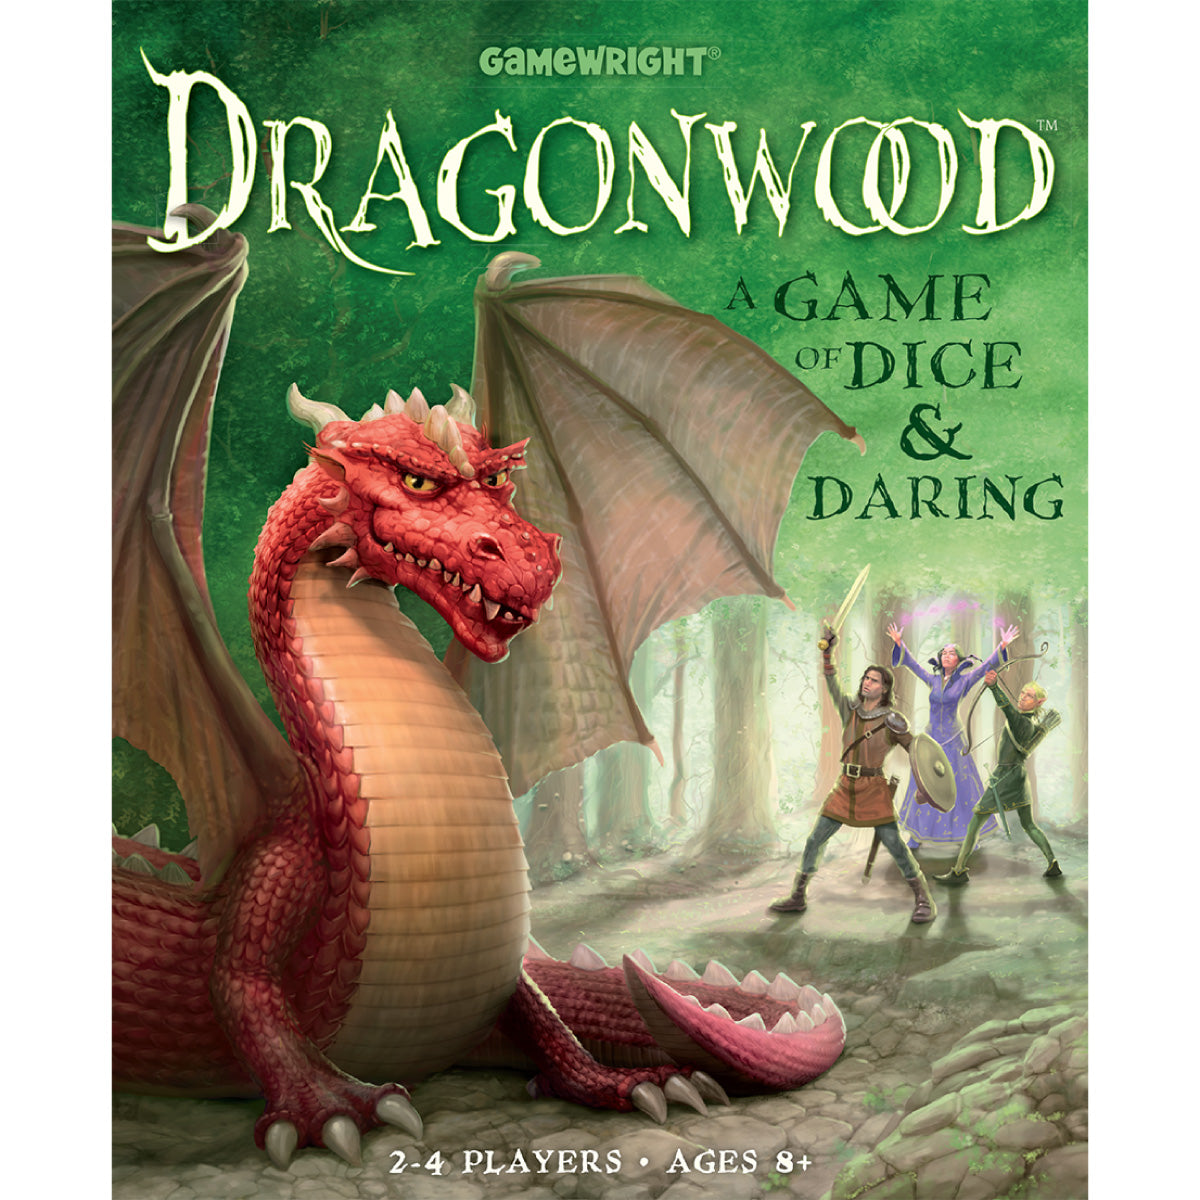 Dragonwood from Gamewright